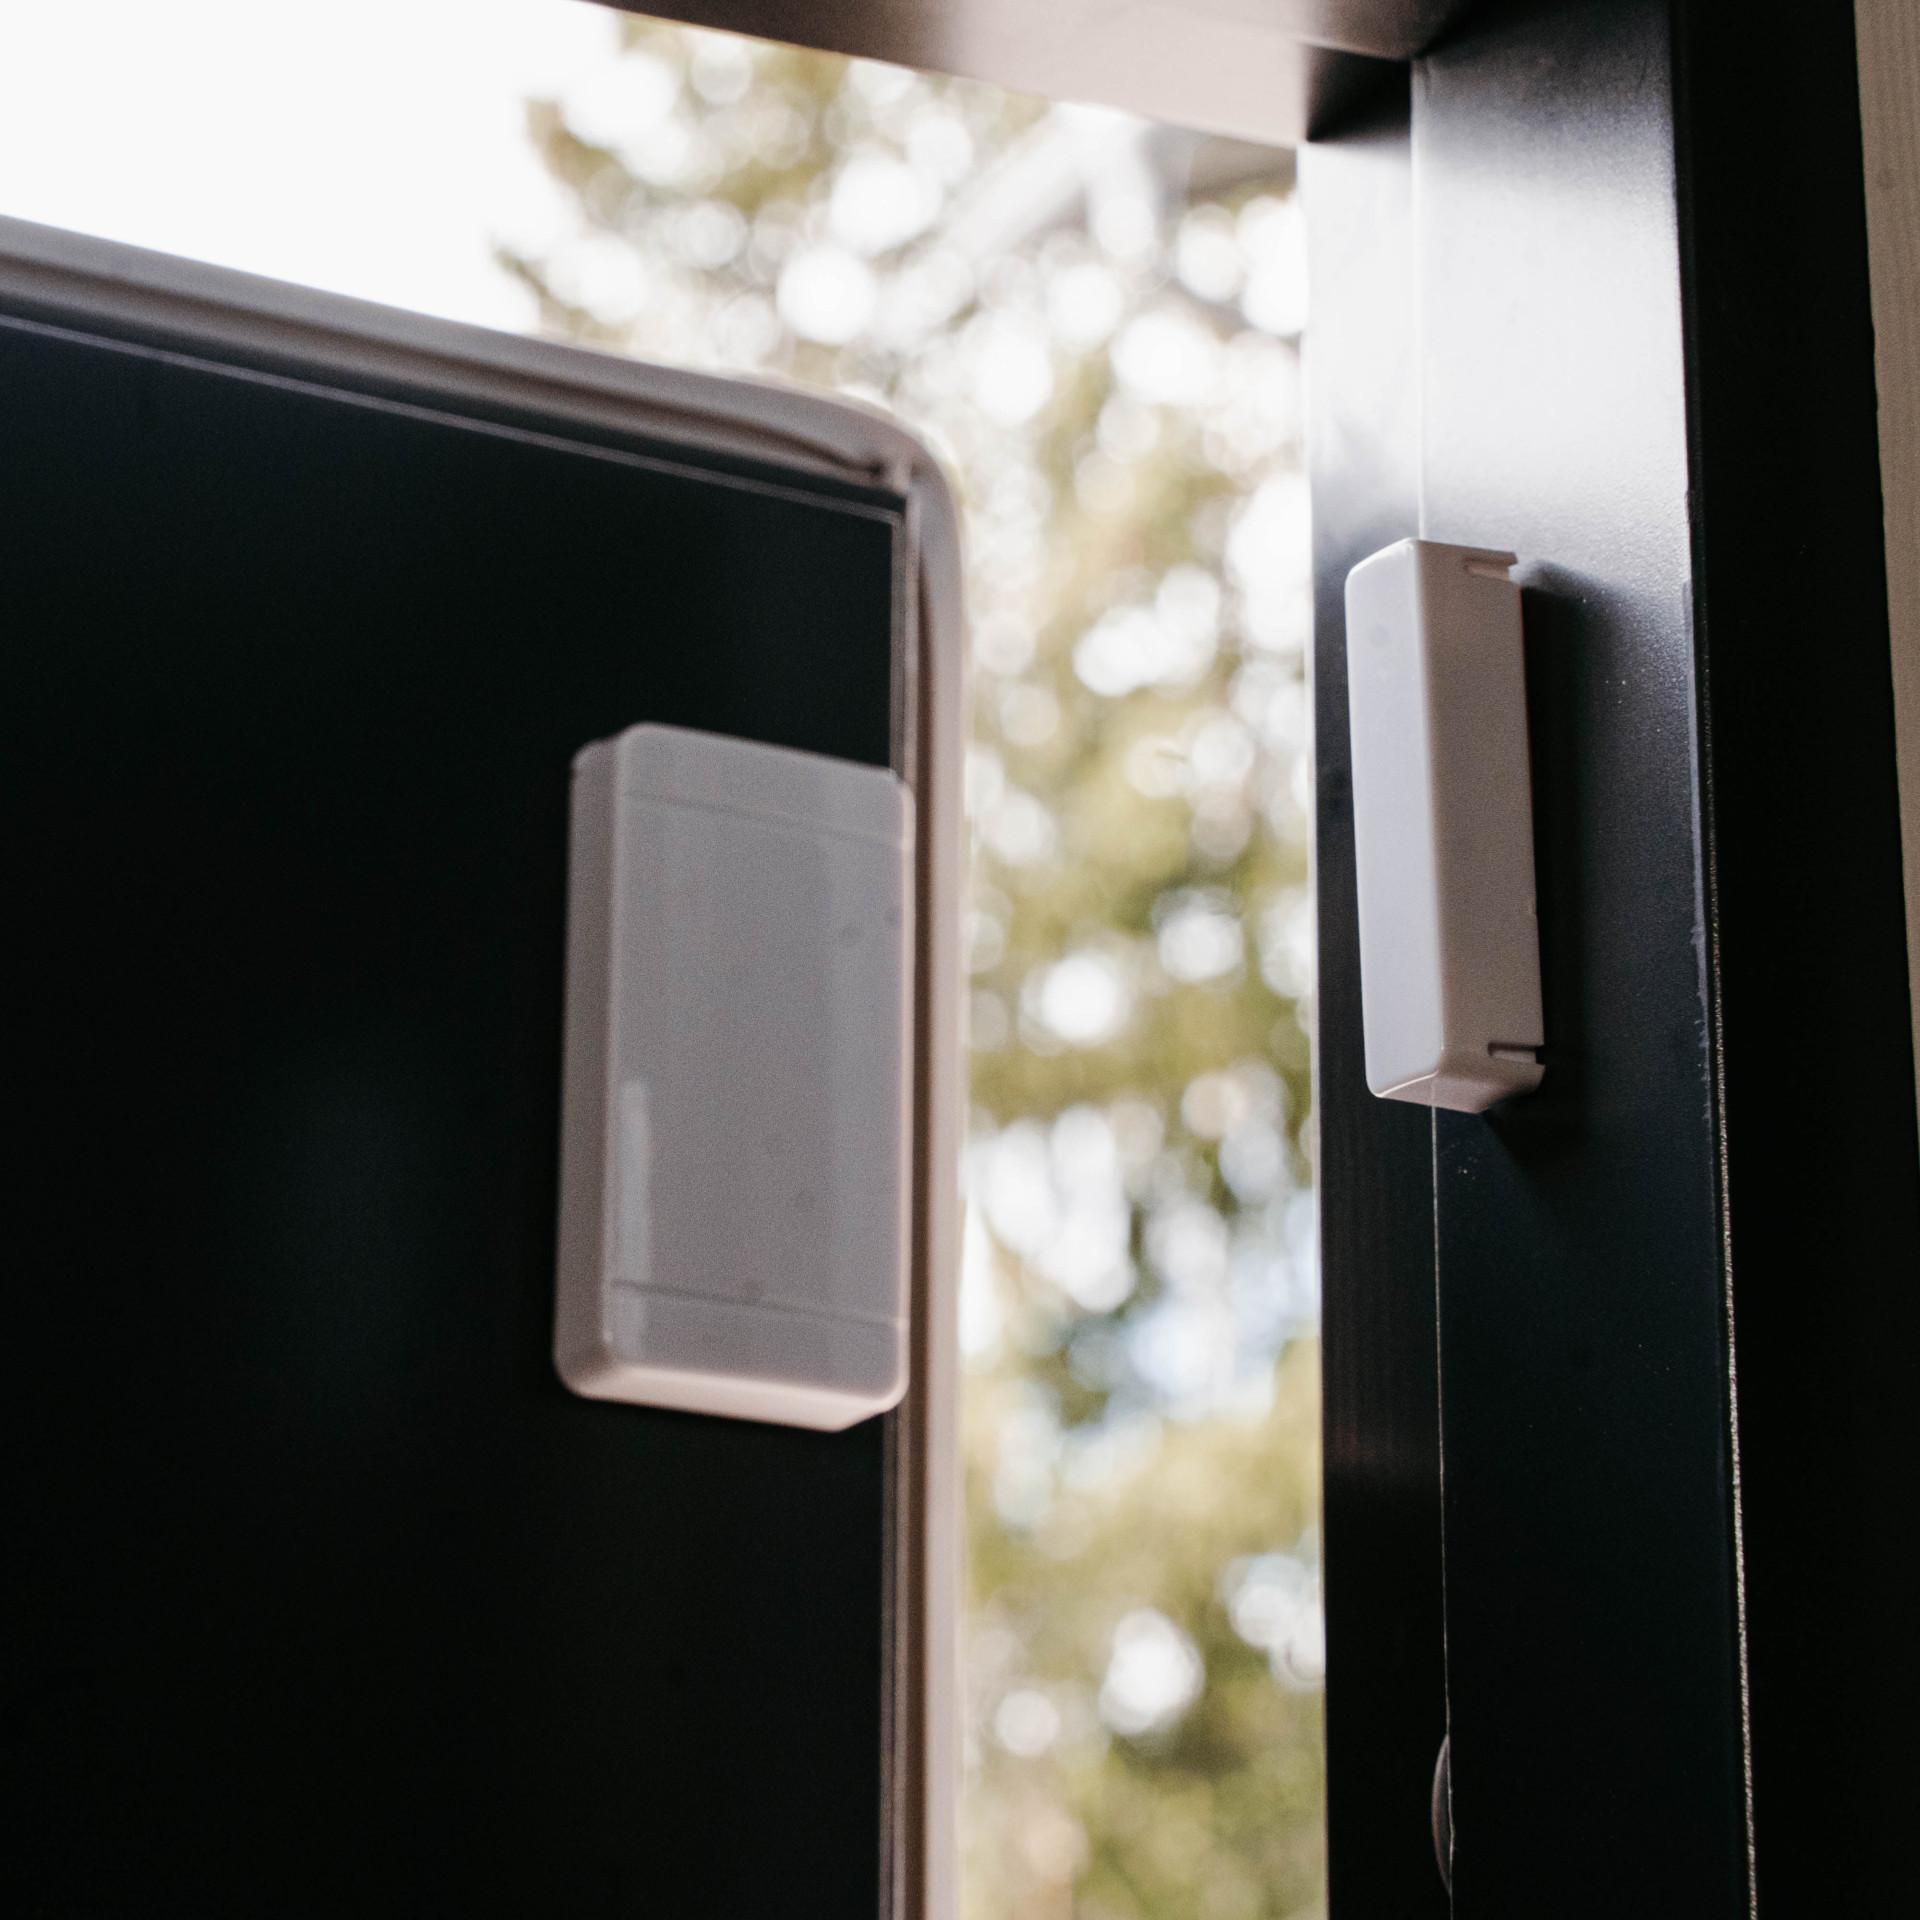 Etäohjattava pistorasia voi toimia vaikka ovivahtina, joka ilmoittaa käyttäjälle oven avauksesta